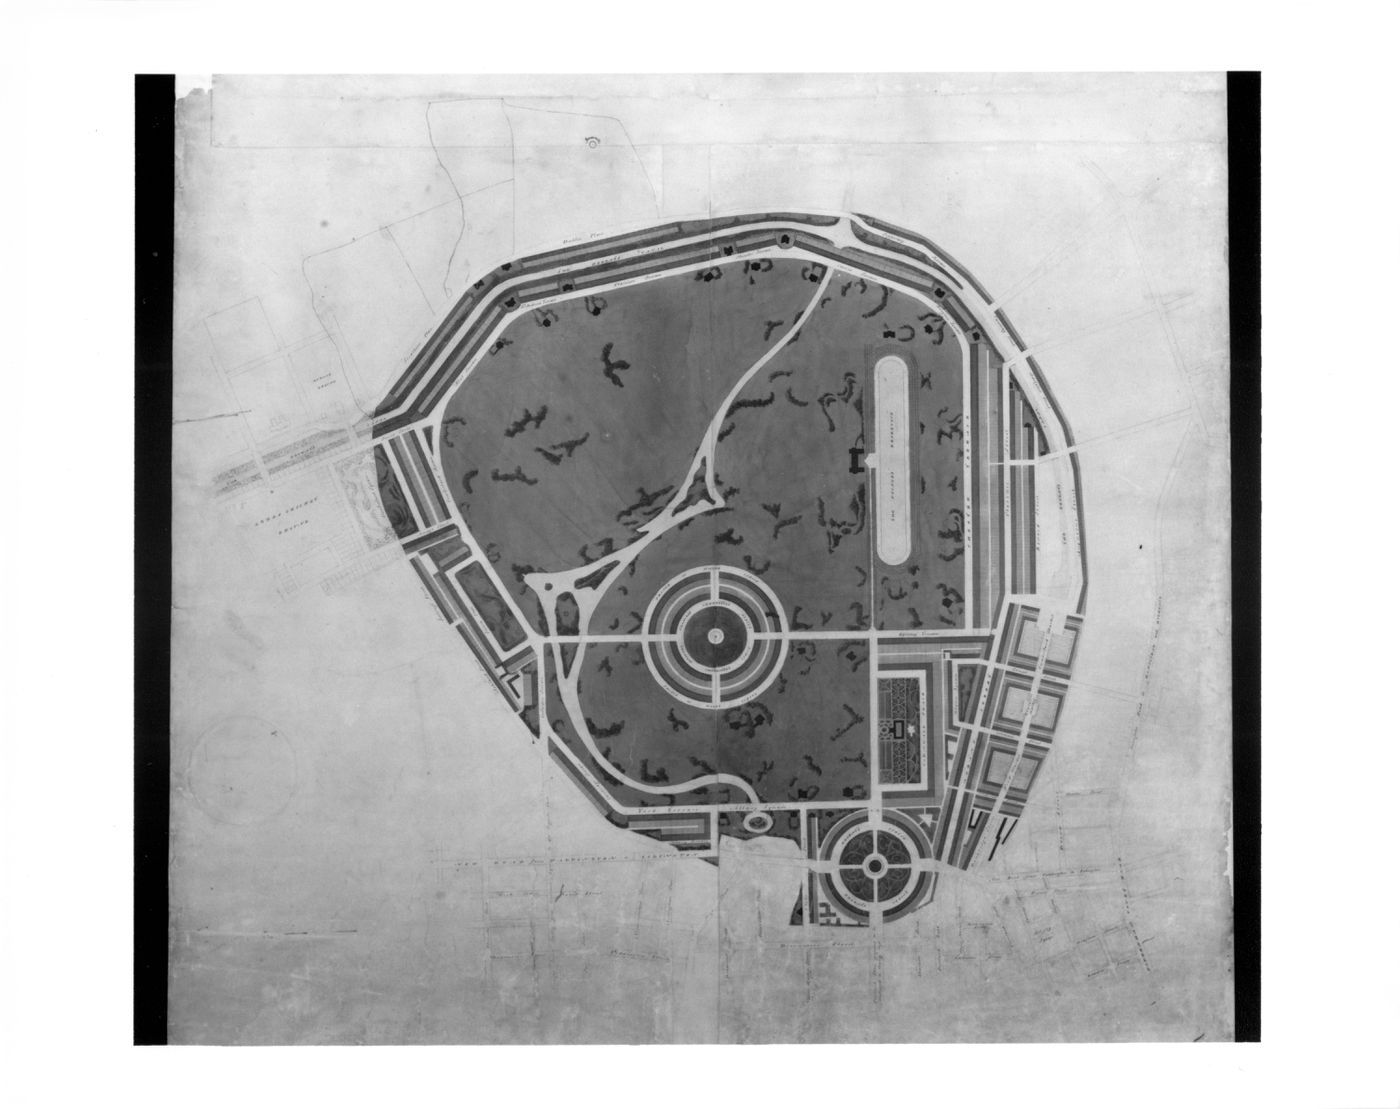 A preliminary design for Regent's Park